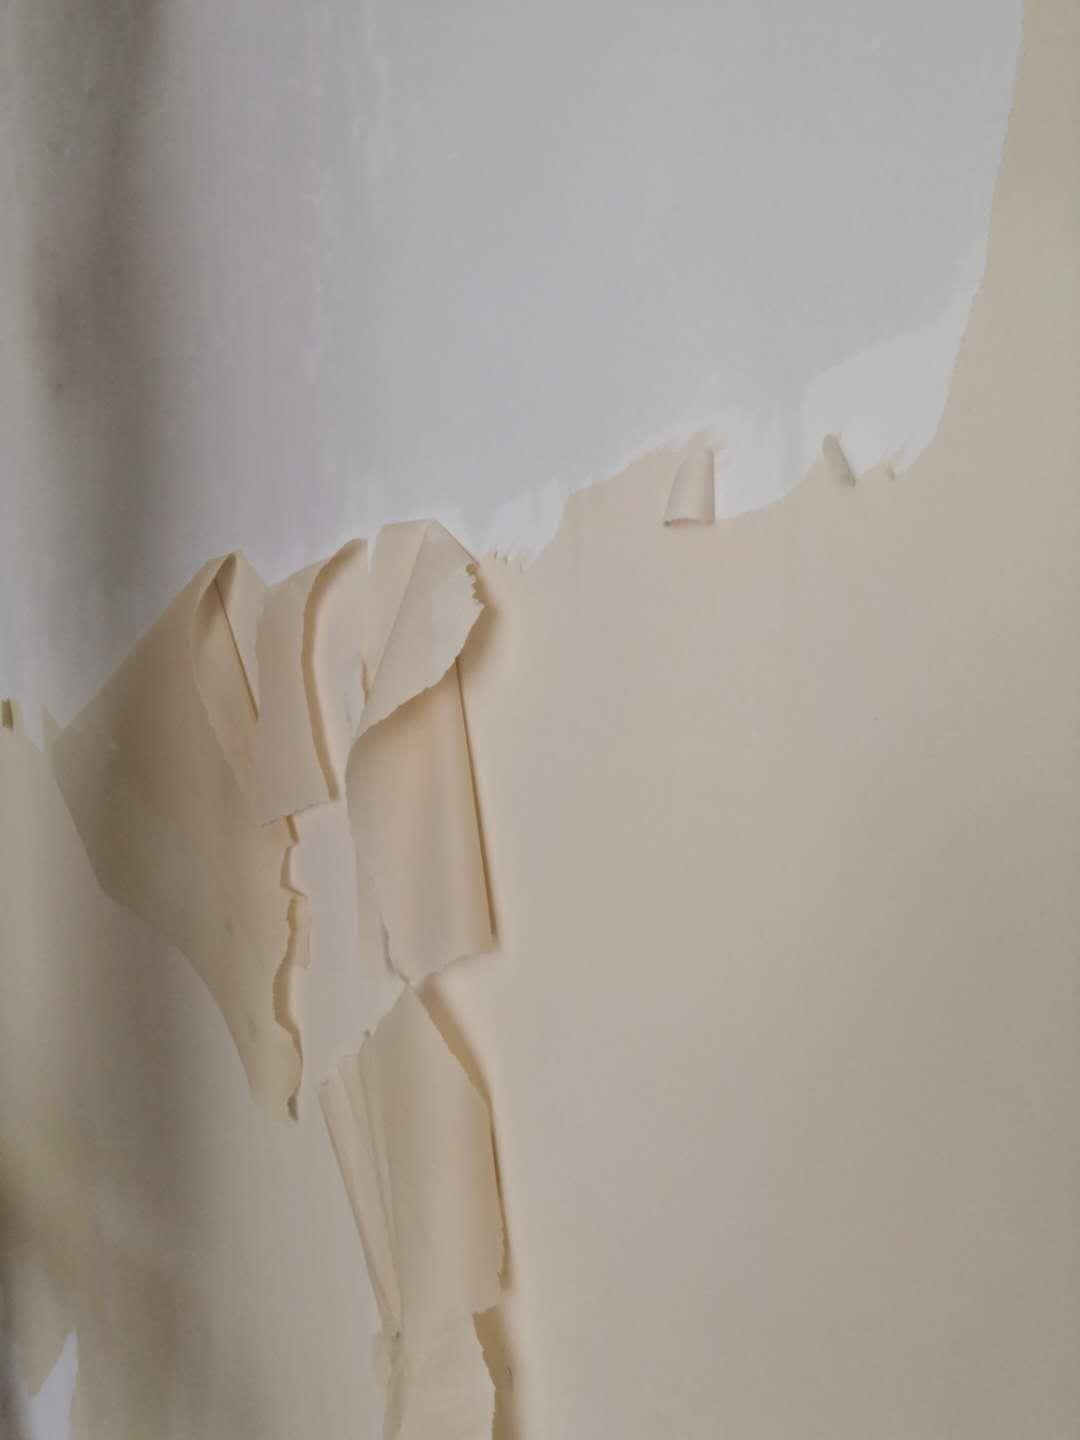 墙纸拆除分两步,首先把表面层揭下,然后再喷水或均匀涂水在基层面,待